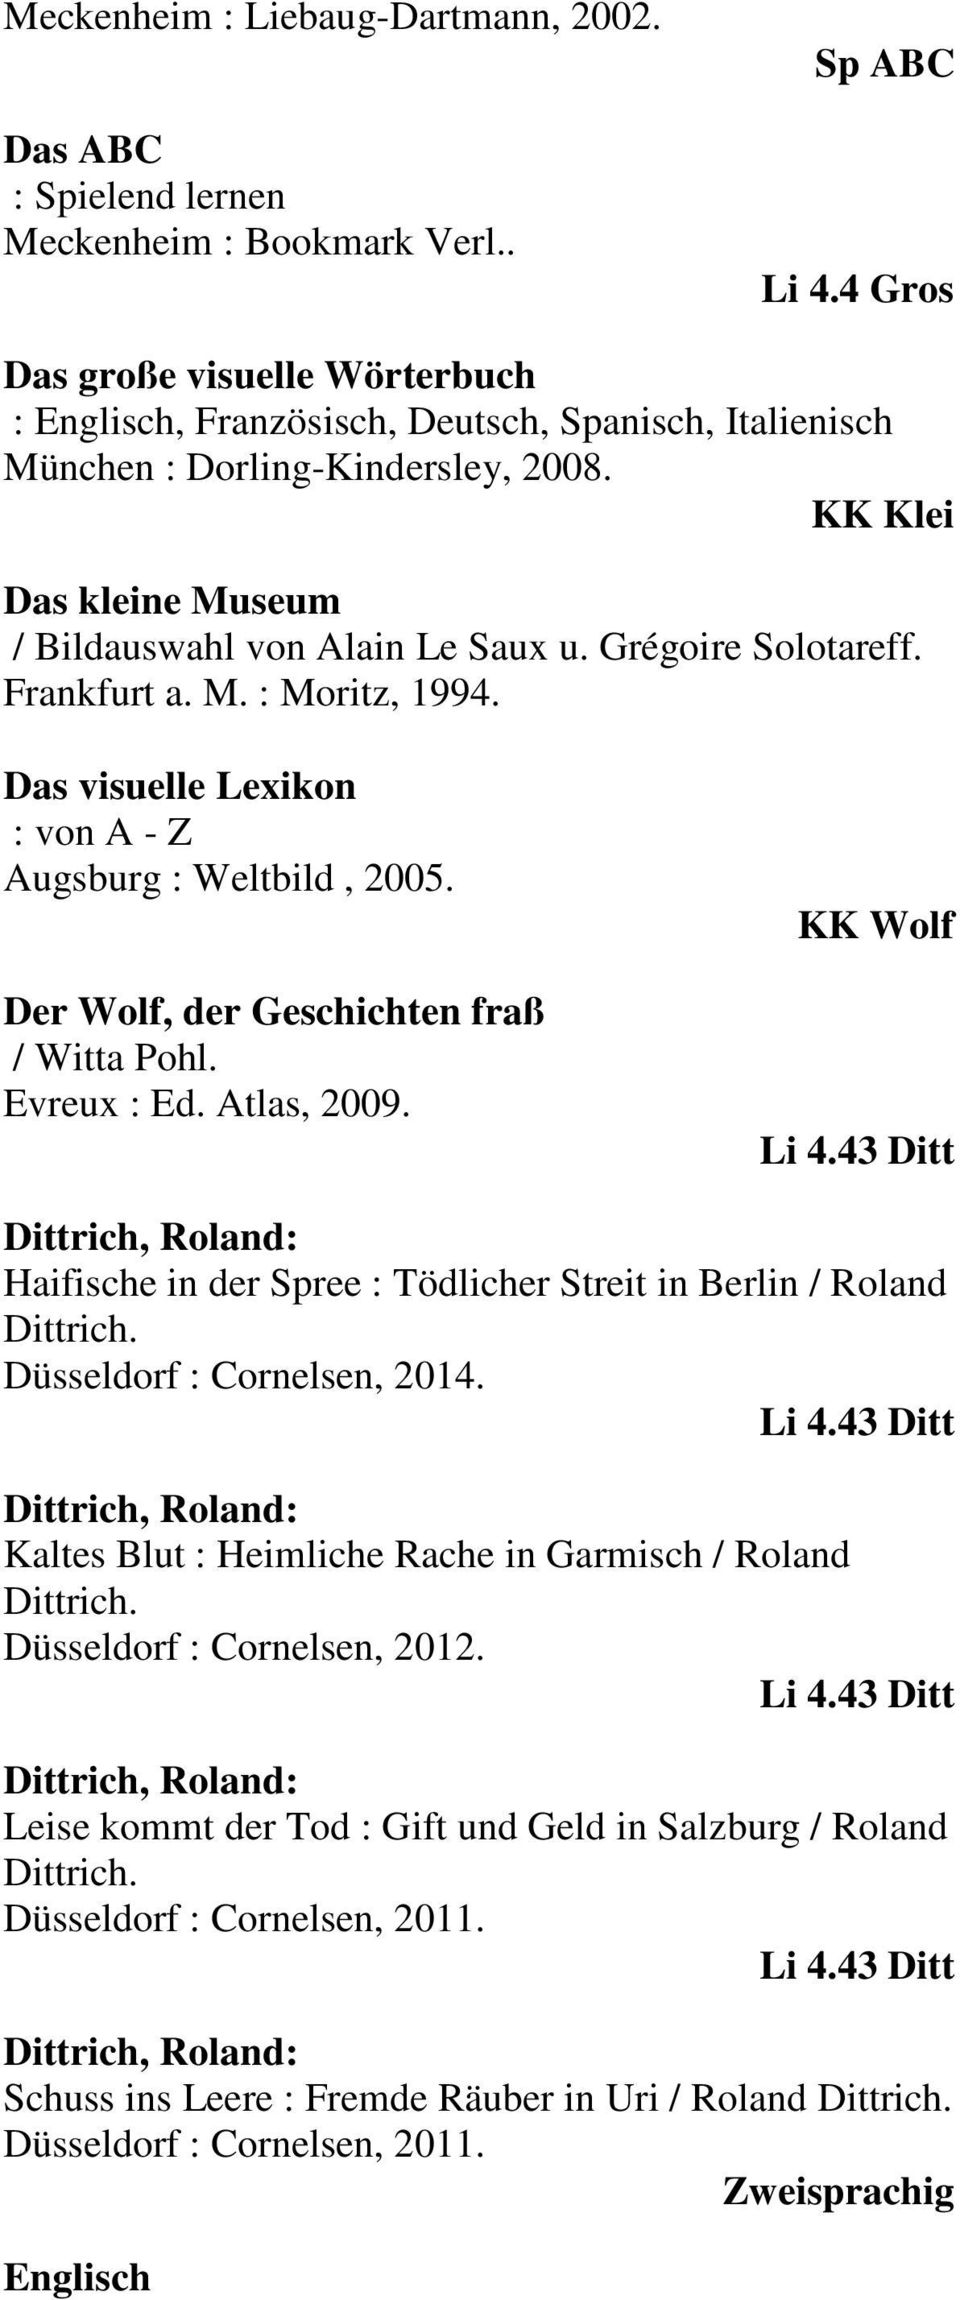 Grégoire Solotareff. Frankfurt a. M. : Moritz, 1994. Das visuelle Lexikon : von A - Z Augsburg : Weltbild, 2005. Der Wolf, der Geschichten fraß / Witta Pohl. Evreux : Ed. Atlas, 2009. KK Wolf Li 4.